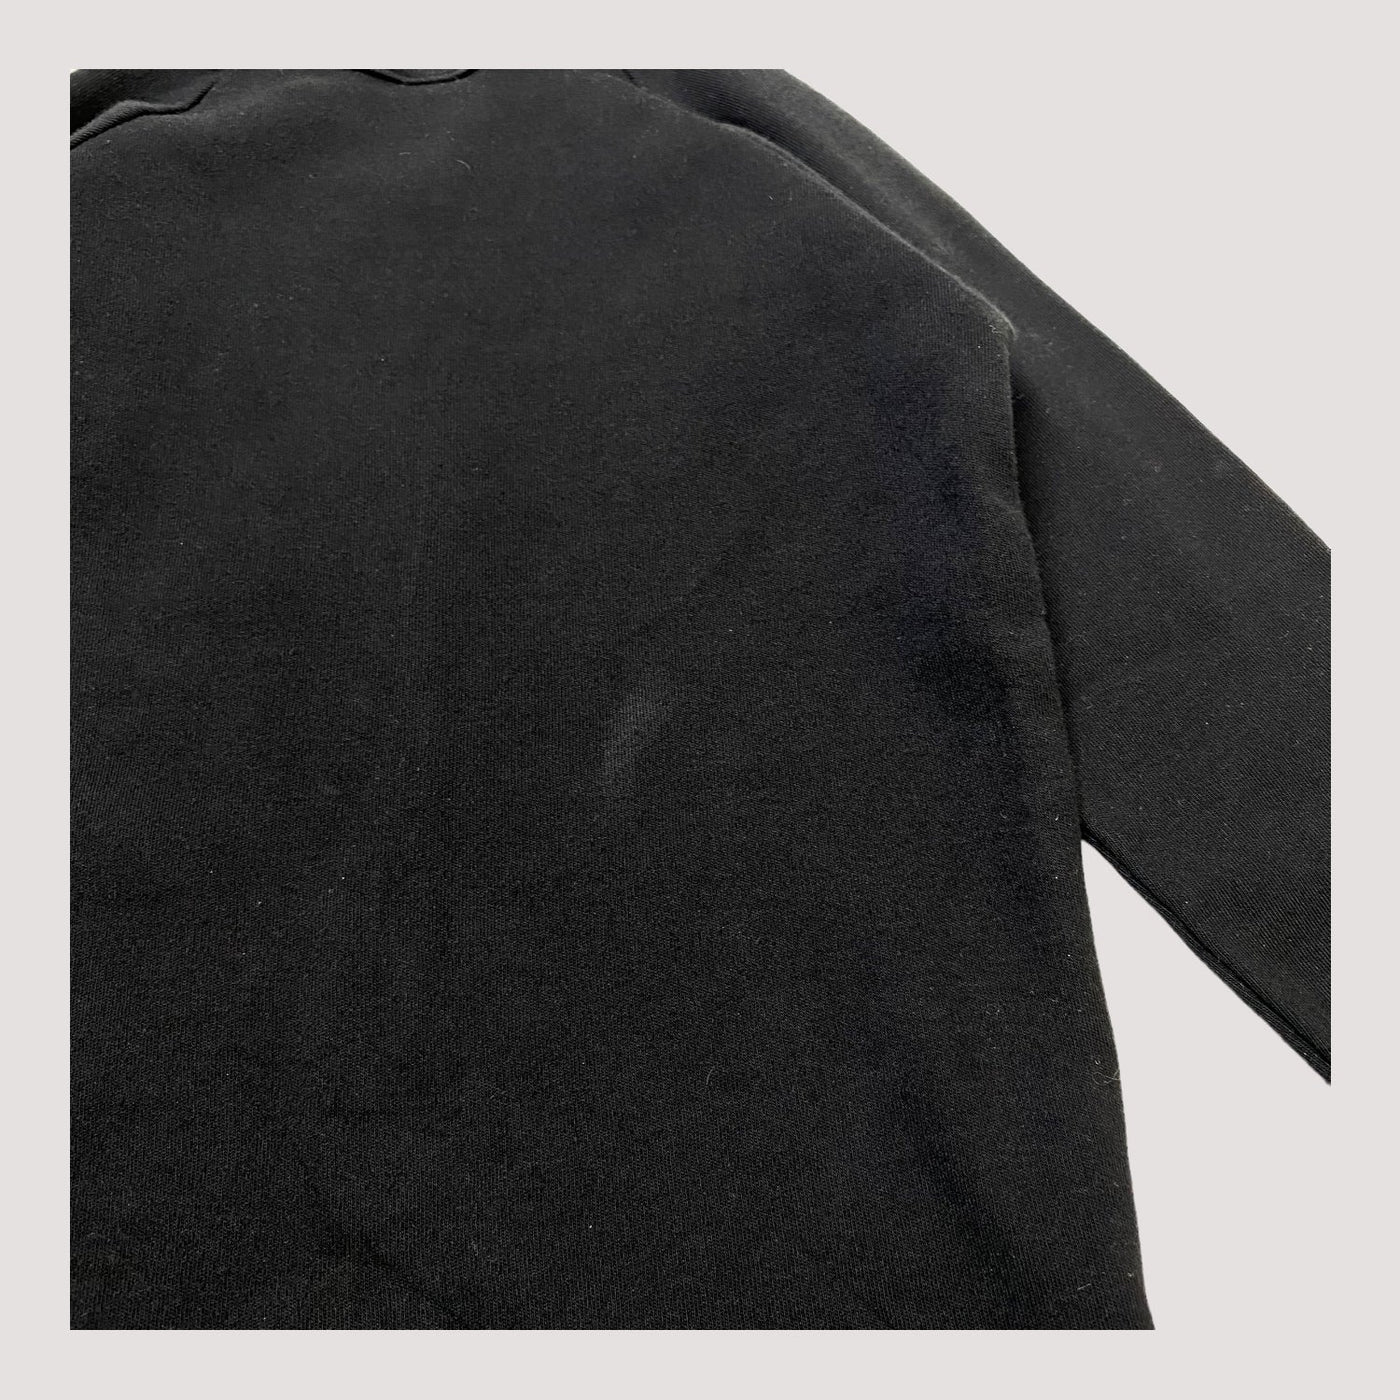 Metsola fringe shirt, black | 98cm